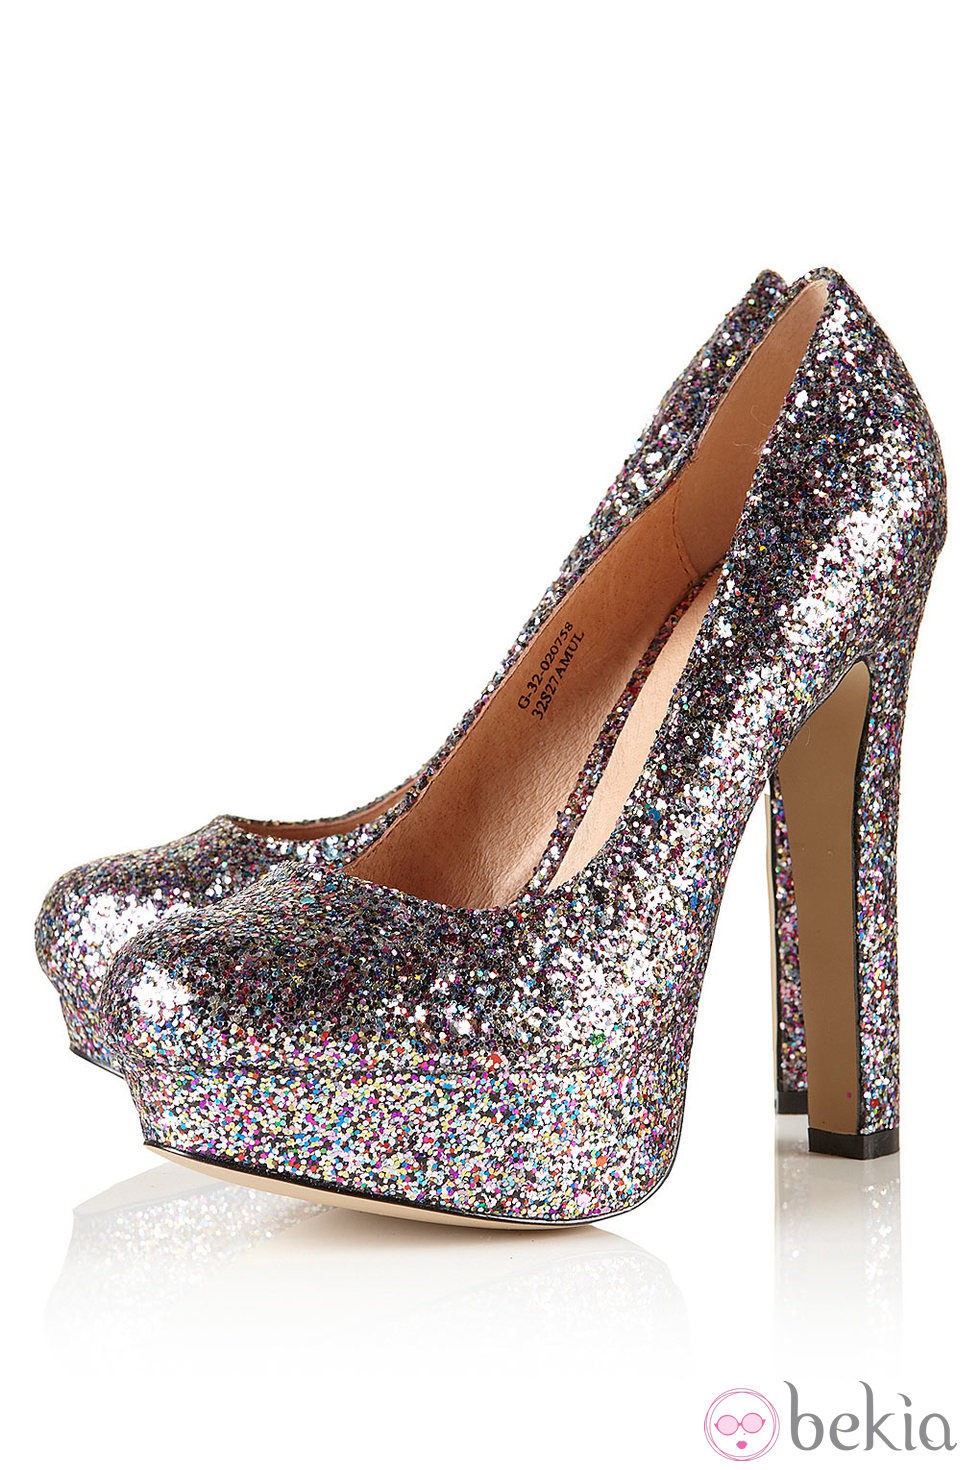 Zapatos block heels de Topshop en glitter plateado